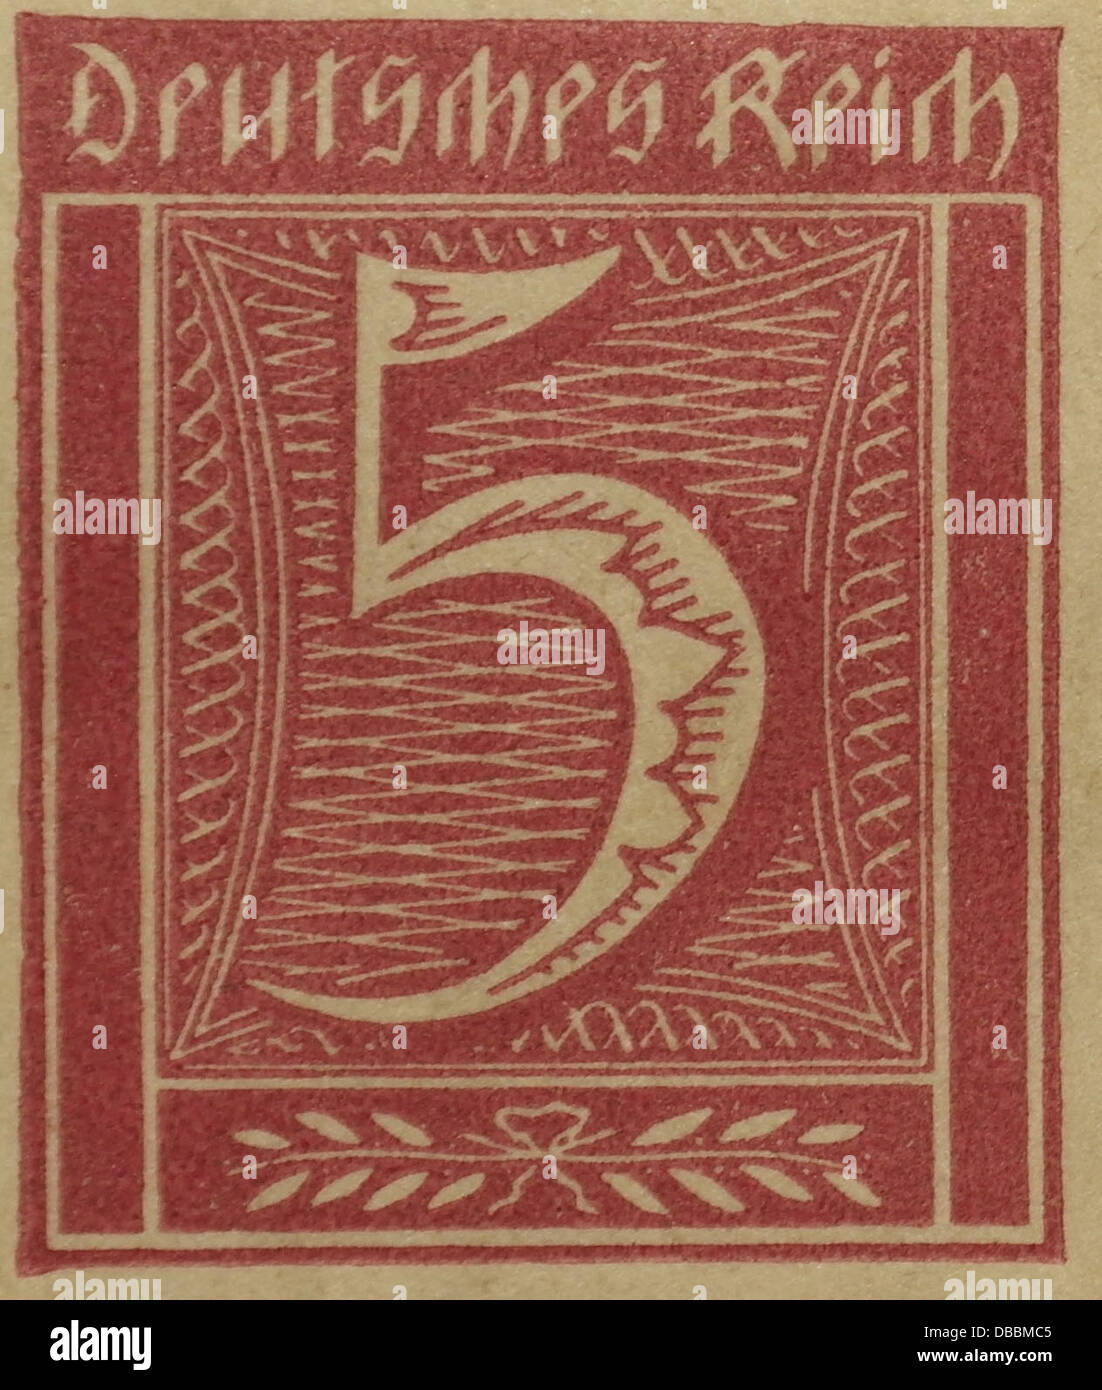 Rot braun 5 Mark Deutsches Reich Weimarer Republik Briefmarke herausgegeben Deutschland, 1921 Stockfoto